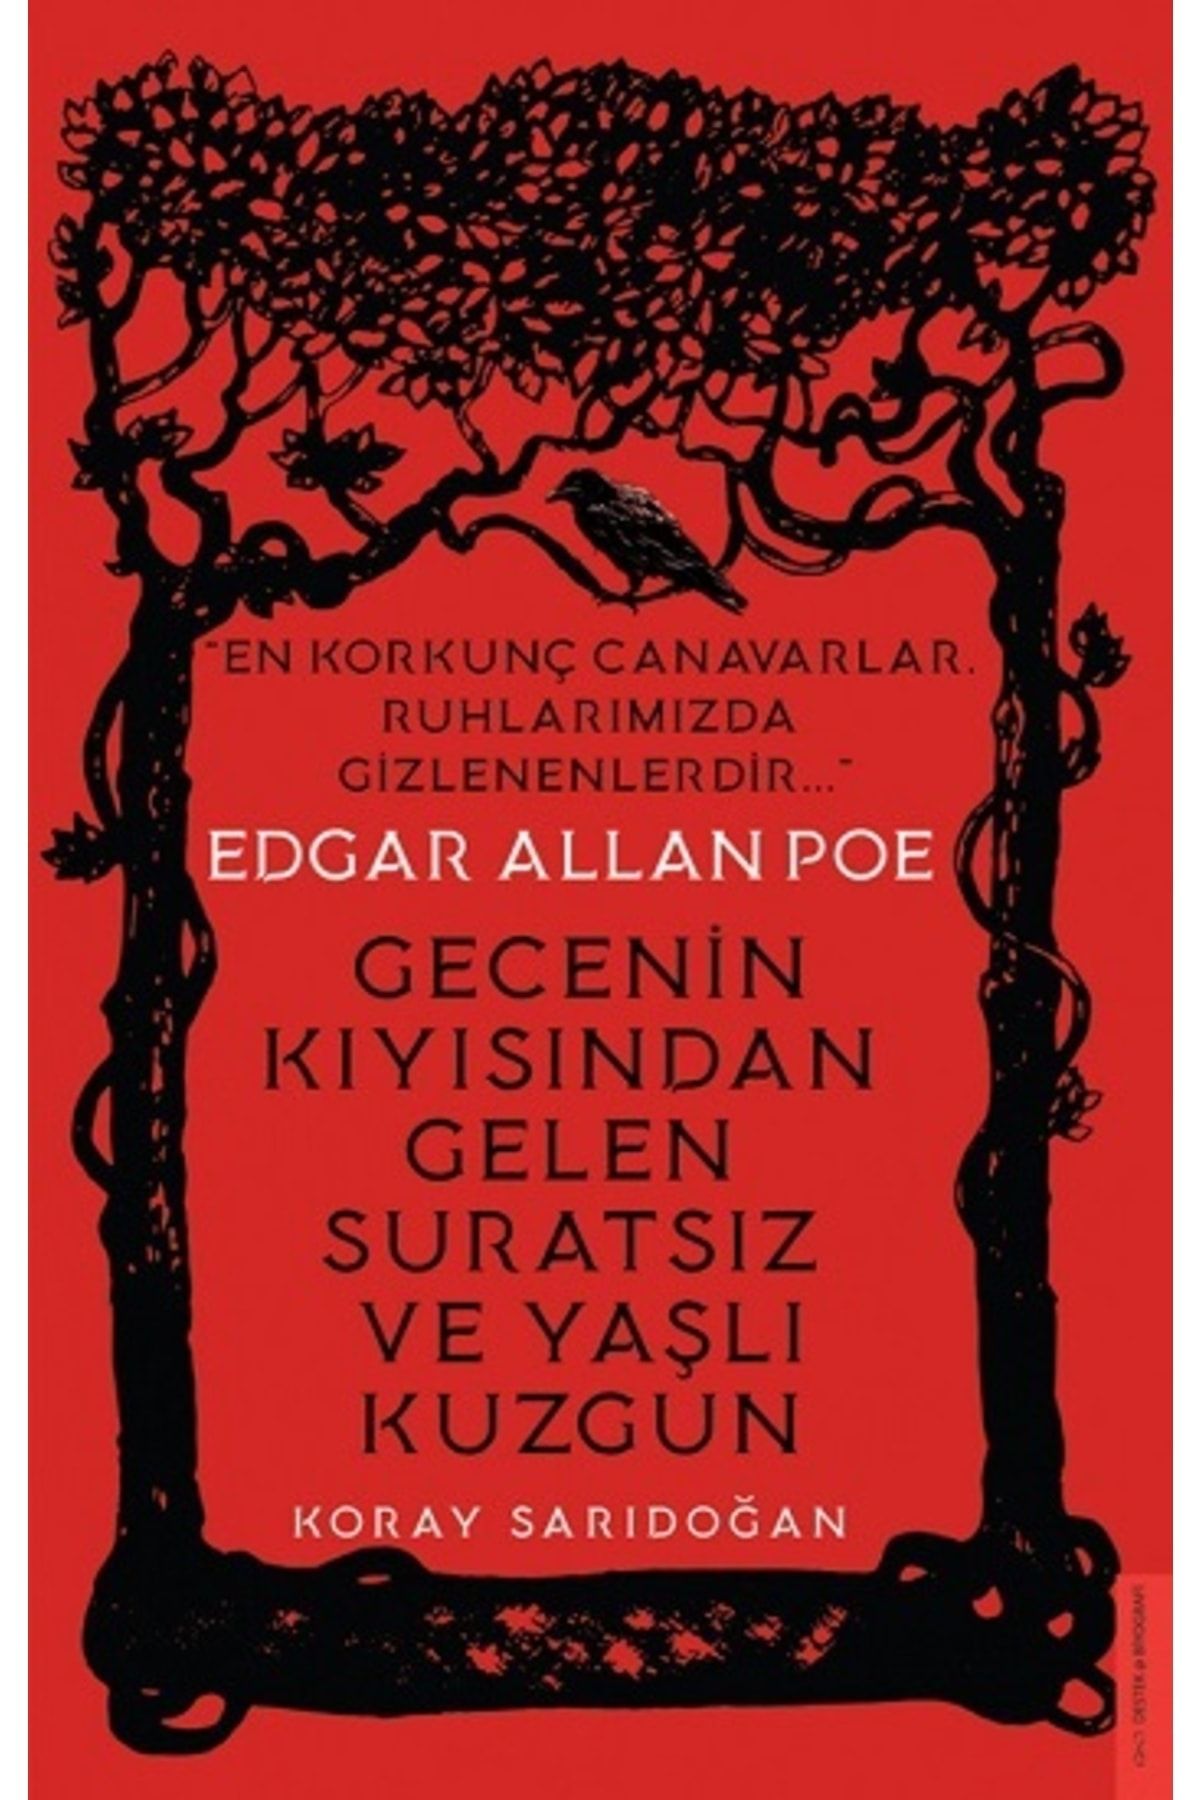 Destek Yayınları Edgar Allan Poe / Gecenin Kıyısından Gelen Suratsız Ve Yaşlı Kuzgun